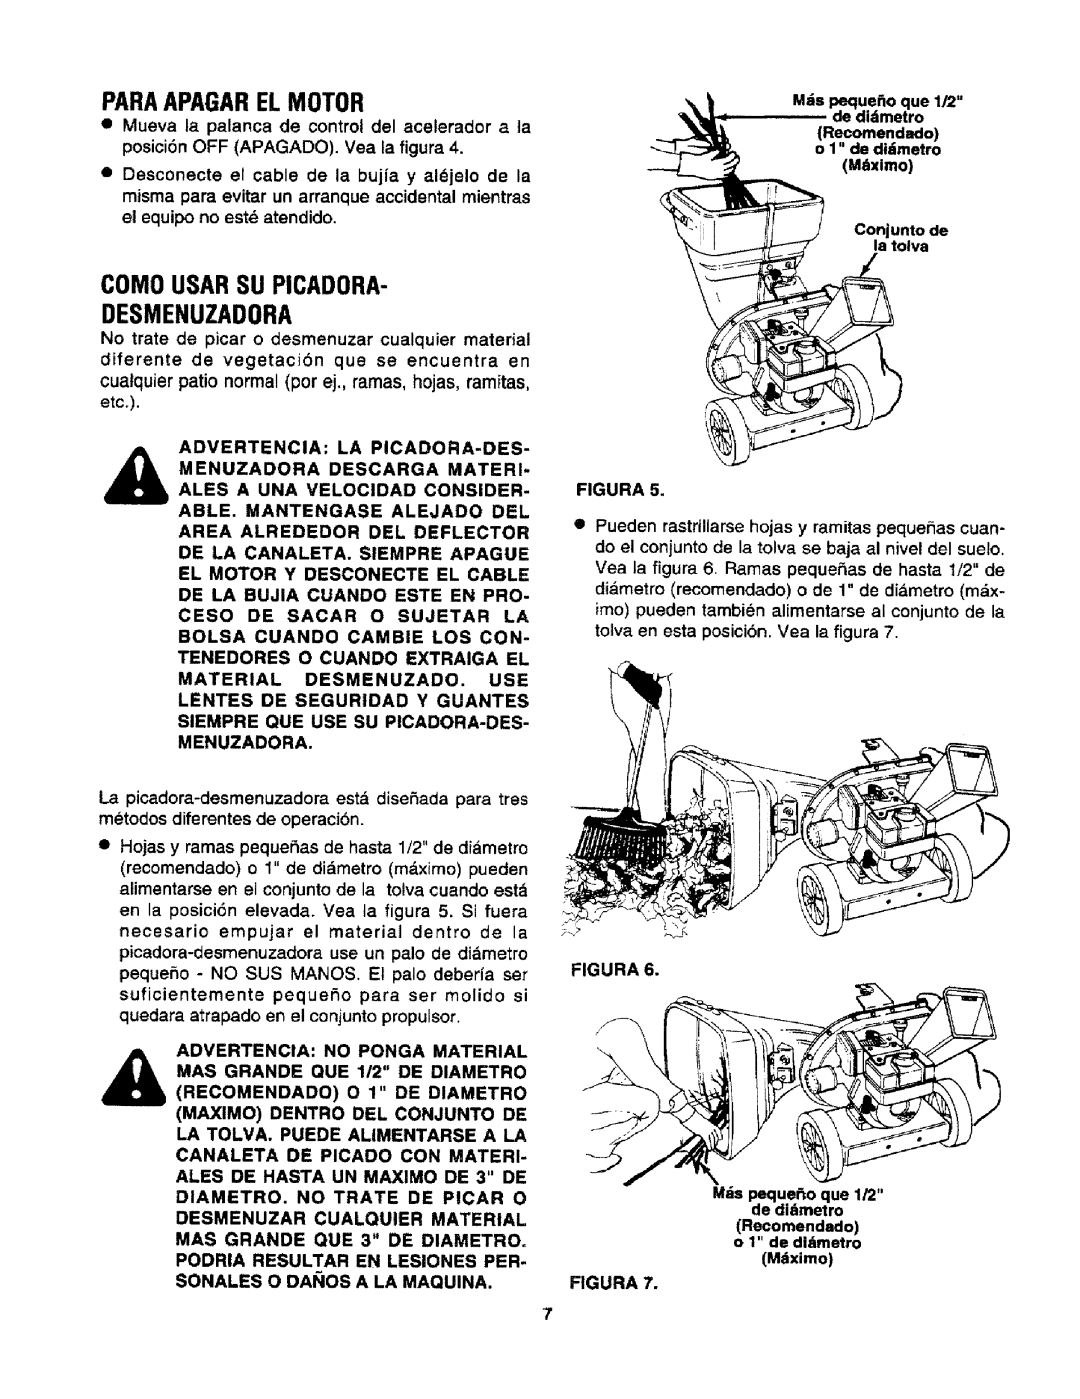 Craftsman 247.795940 manual Paraapagarel Motor, Como Usar Su Picadora Desmenuzadora 